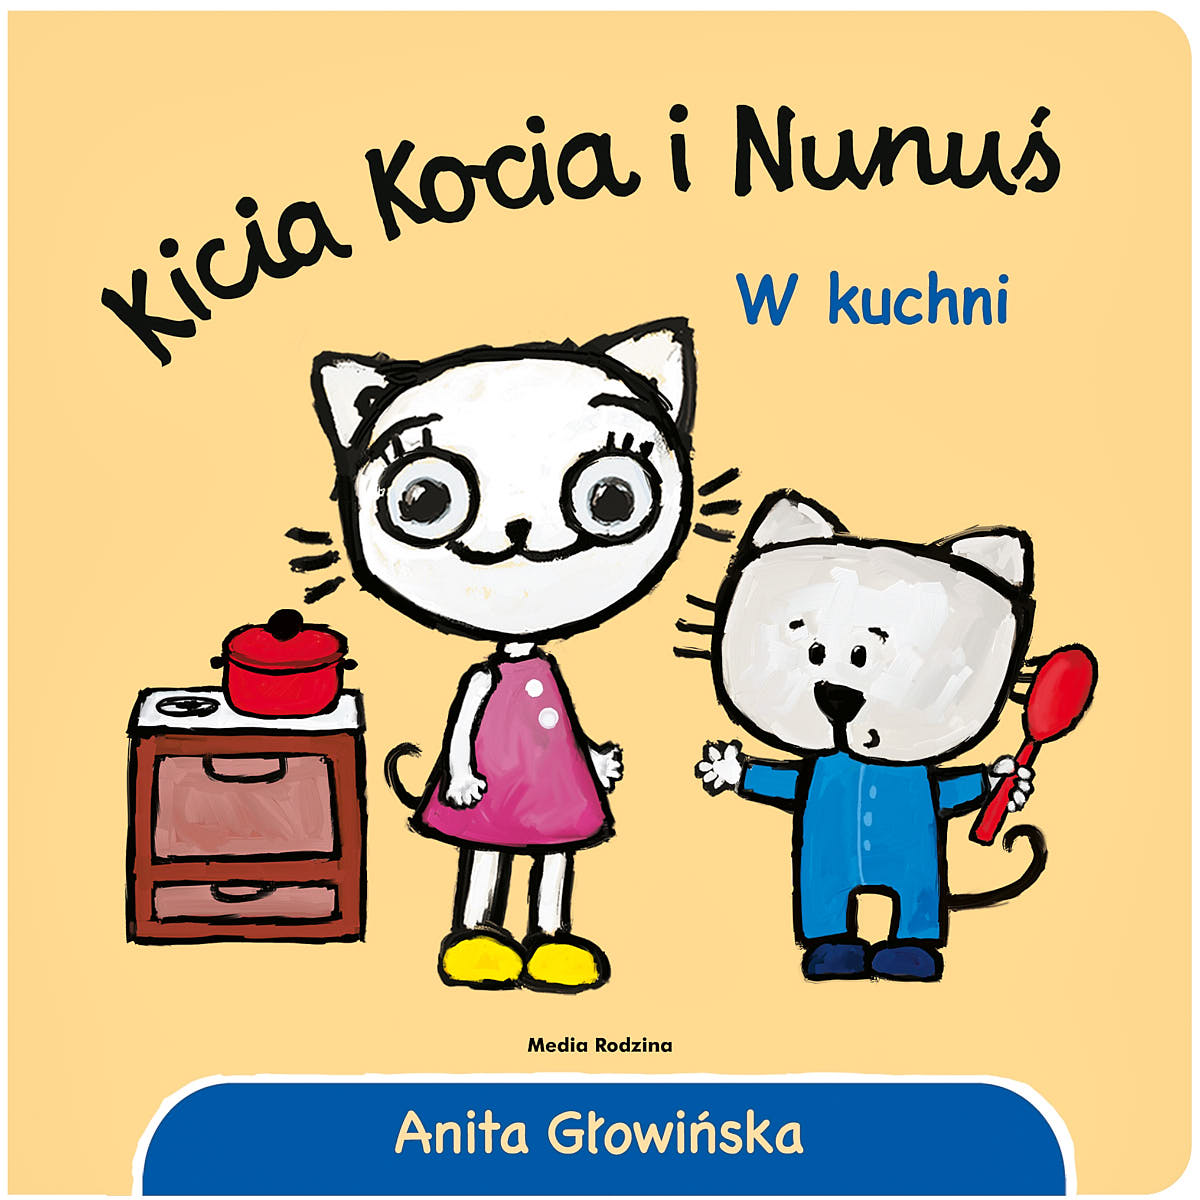 Kicia Kocia i Nunuś. W kuchni - Wydawnictwo Media Rodzina